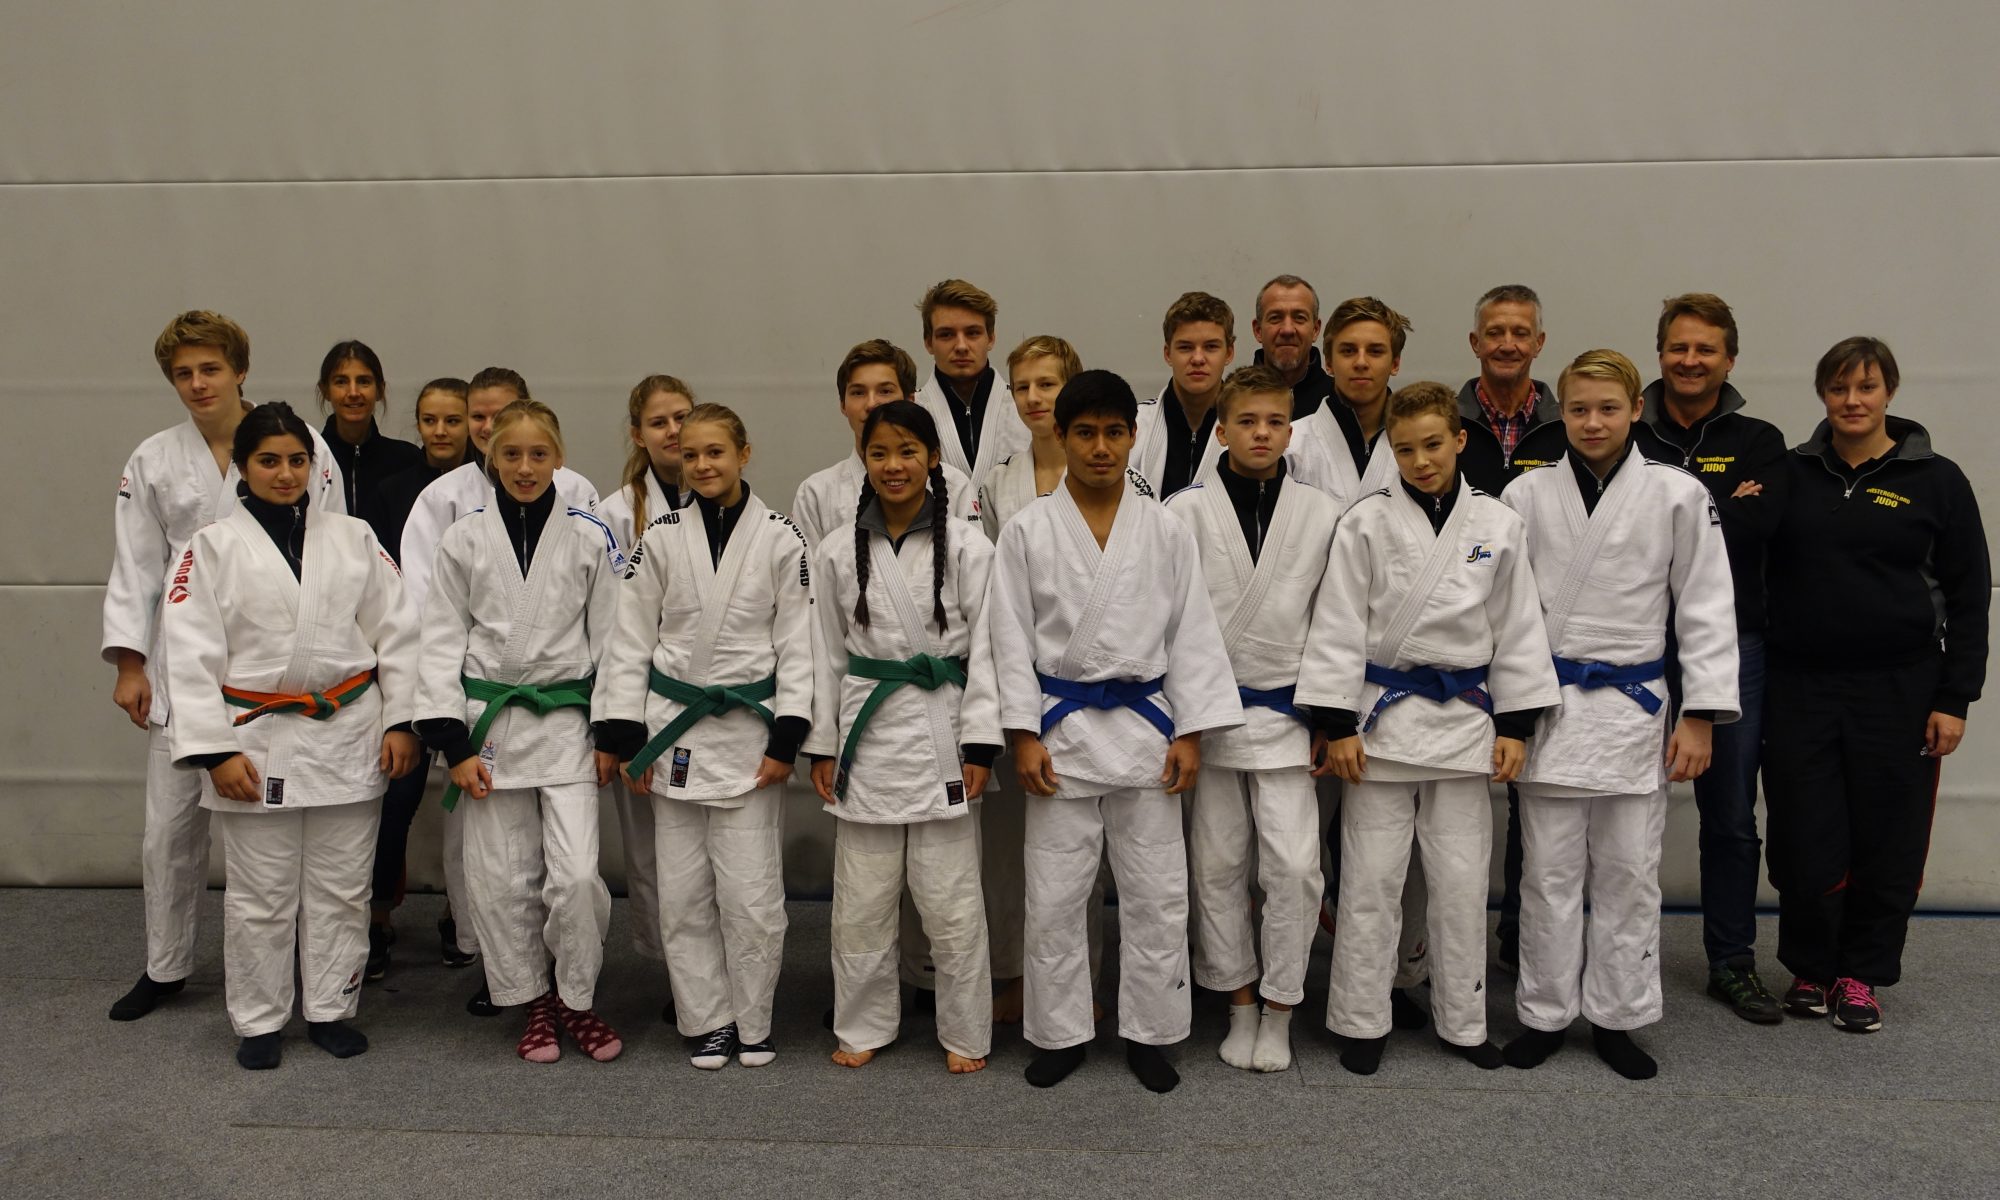 Västergötlands Judoförbund